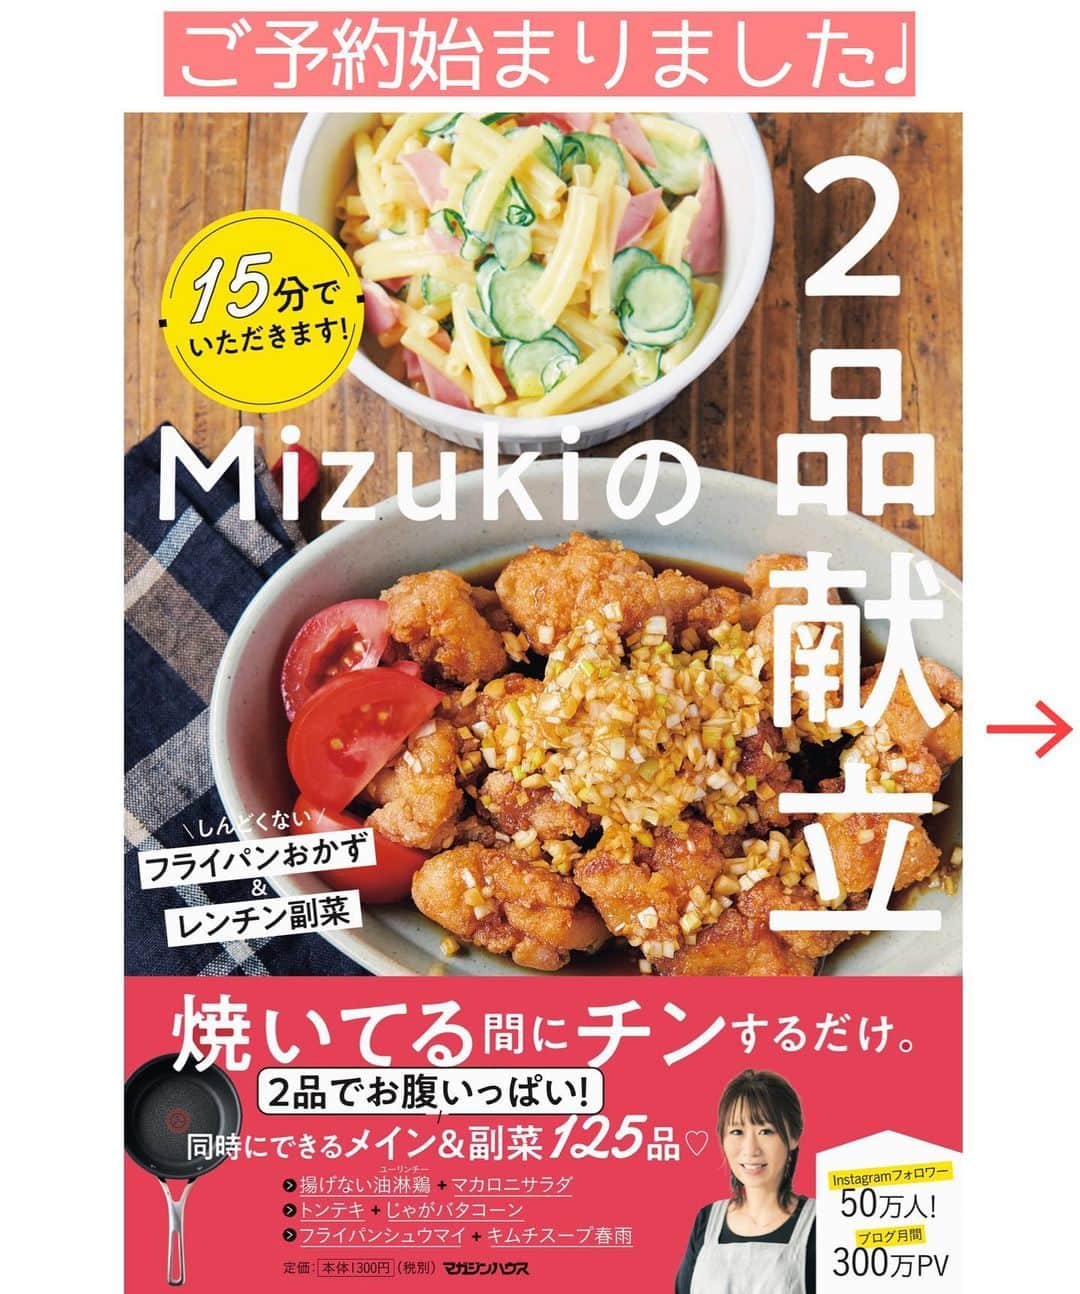 Mizuki【料理ブロガー・簡単レシピ】さんのインスタグラム写真 - (Mizuki【料理ブロガー・簡単レシピ】Instagram)「・﻿ 【#レシピ 】ーーーーーーー﻿ ホットケーキミックスで！﻿ ♡カフェモカマフィン♡﻿ ーーーーーーーーーーーーー﻿ ﻿ ﻿ ﻿ おはようございます(*^^*)﻿ ﻿ 今日はホケミスイーツ♡﻿ コーヒーのほのかな苦味と﻿ チョコの甘さが好相性の﻿ カフェモカマフィンのご紹介です♩﻿ ﻿ 作り方は超簡単(*´艸`)﻿ バターなし！混ぜて焼くだけ♡﻿ インスタントコーヒー&板チョコで﻿ とっても手軽に作れますよ〜♩ ﻿ ﻿ あっという間にできるので﻿ よかったらお試し下さいね(*^^*)﻿ ﻿ ﻿ ﻿ ＿＿＿＿＿＿＿＿＿＿＿＿＿＿＿＿＿＿＿＿﻿ 【マフィン型1台(6個)分】﻿ 牛乳...70ml﻿ インスタントコーヒー...小2﻿ ●卵...1個﻿ ●砂糖...大3﻿ ●サラダ油...60g﻿ ホットケーキミックス...150g﻿ 板チョコ...1枚(50g)﻿ ﻿ (準備)型にグラシンカップを敷く。オーブンを180度に予熱する。チョコは適当に割っておく。﻿ 1.耐熱ボウルに牛乳とインスタントコーヒーを入れ、600Wのレンジで20秒加熱し、泡立て器で混ぜて溶かす。﻿ 2.●を加えてよく混ぜ、続けてホットケーキミックスとチョコ(飾り用に少し残す)を加えてゴムベラで混ぜる。﻿ 3.型に注ぎ、残したチョコをのせ、予熱したオーブンで20分焼く。﻿ ￣￣￣￣￣￣￣￣￣￣￣￣￣￣￣￣￣￣￣￣﻿ ﻿ ﻿ ﻿ 《ポイント》﻿ ♦︎マフィンカップで作ってもOK♩﻿ ♦︎私はブラックチョコレートを使用しています♩﻿ ﻿ ﻿ ﻿ ﻿ ﻿ ﻿ _____________________________________﻿ 💓新刊予約開始しました💓﻿ Amazon予約キャンペーン実施中🎁﻿ ￣￣￣￣￣￣￣￣￣￣￣￣￣￣￣￣￣﻿ \15分でいただきます/﻿ #Mizukiの2品献立﻿ (9月24日発売・マガジンハウス)﻿ ﻿ 忙しい私たちには﻿ 2品くらいがちょうどいい！﻿ 『しんどくない献立、考えました』﻿ ￣￣￣￣￣￣￣￣￣￣￣￣￣￣￣￣﻿ ﻿ メインはフライパン﻿ 副菜はレンジ(又は和えるだけ)の2品献立💕﻿ メインを作っている合間にできる﻿ レンチン副菜を組み合わせることで﻿ 15分で2品が同時に完成します！﻿ (別腹デザートも掲載😂)﻿ ﻿ ﻿ ーーーーーPART.1 ーーーーー﻿ 【Mizukiのお墨つき！２品献立ベスト10】﻿ 約15分でできる10献立をご紹介！﻿ メインは全部フライパン、副菜はレンチンor混ぜるだけ♡﻿ ﻿ ーーーーーPART.2 ーーーーー﻿ 【フライパンひとつ！今夜のメインおかず】﻿ 献立の主役になる肉や魚のおかず50品！﻿ Part3の副菜と組み合わせれば﻿ 献立のバリエーションが広がりますよ♩﻿ ﻿ ーーーーー PART.3 ーーーーー﻿ 【合間に作れる！ 野菜別かんたん副菜】﻿ レンチンor和えるだけの副菜レシピを﻿ 素材別にたっぷり収録♩﻿ ﻿ ーーーーー番外編ーーーーー﻿ 【ひとつで満足！ご飯＆麺】﻿ 【具だくさん！おかずスープ】﻿ 【オーブンいらずのおやつレシピ】﻿ ￣￣￣￣￣￣￣￣￣￣￣￣￣￣￣￣￣￣﻿ ﻿ ﻿ 🎁🎁🎁🎁🎁🎁🎁🎁🎁🎁🎁🎁﻿ Amazon予約プレゼントキャンペーン﻿ 🎁🎁🎁🎁🎁🎁🎁🎁🎁🎁🎁🎁﻿ ﻿ 皆様に感謝の気持ちを込めて﻿ ご用意させていただきました✨﻿ ﻿ ＿＿＿＿＿＿＿＿＿＿＿＿＿＿＿＿＿﻿ 新刊【2品献立】をAmazonで予約し﻿ インスタにアップして下さった方に﻿ 抽選で［フライパン］or［ボールセット］を﻿ プレゼントさせていただきます♩﻿ ￣￣￣￣￣￣￣￣￣￣￣￣￣￣￣￣￣﻿ ﻿ ✅【インスタ応募方法▼】﻿ ①本の表紙の画像を1枚目に、﻿ Amazonで予約したことがわかる画像を﻿ 2枚目に貼り付け(どちらもスクショでOK)﻿ ［#Mizukiの2品献立 ］のハッシュタグを付けて投稿！﻿ 以上で応募完了です(*^^*)﻿ ﻿ ￣￣￣￣￣￣￣￣￣￣￣￣￣￣￣￣￣￣﻿ ハイライトにリンク🔗あります💓﻿ ﻿ ﻿ ﻿ ﻿ ﻿ ﻿ ￣￣￣￣￣￣￣￣￣￣￣￣￣￣￣￣￣￣﻿ レシピを作って下さった際や﻿ レシピ本についてのご投稿には﻿ タグ付け( @mizuki_31cafe )して﻿ お知らせいただけると嬉しいです😊💕﻿ ﻿ ﻿ ﻿ ﻿ ﻿ #ホットケーキミックス#チョコ#コーヒー#マフィン#Mizuki#簡単レシピ#時短レシピ#節約レシピ#料理#フーディーテーブル#マカロニメイト#おうちごはん#デリスタグラマー#料理好きな人と繋がりたい#食べ物#料理記録#おうちごはんlover#写真好きな人と繋がりたい#foodpic#cooking#recipe#lin_stagrammer#foodporn#yummy#f52grams#カフェモカマフィンm」9月20日 8時09分 - mizuki_31cafe